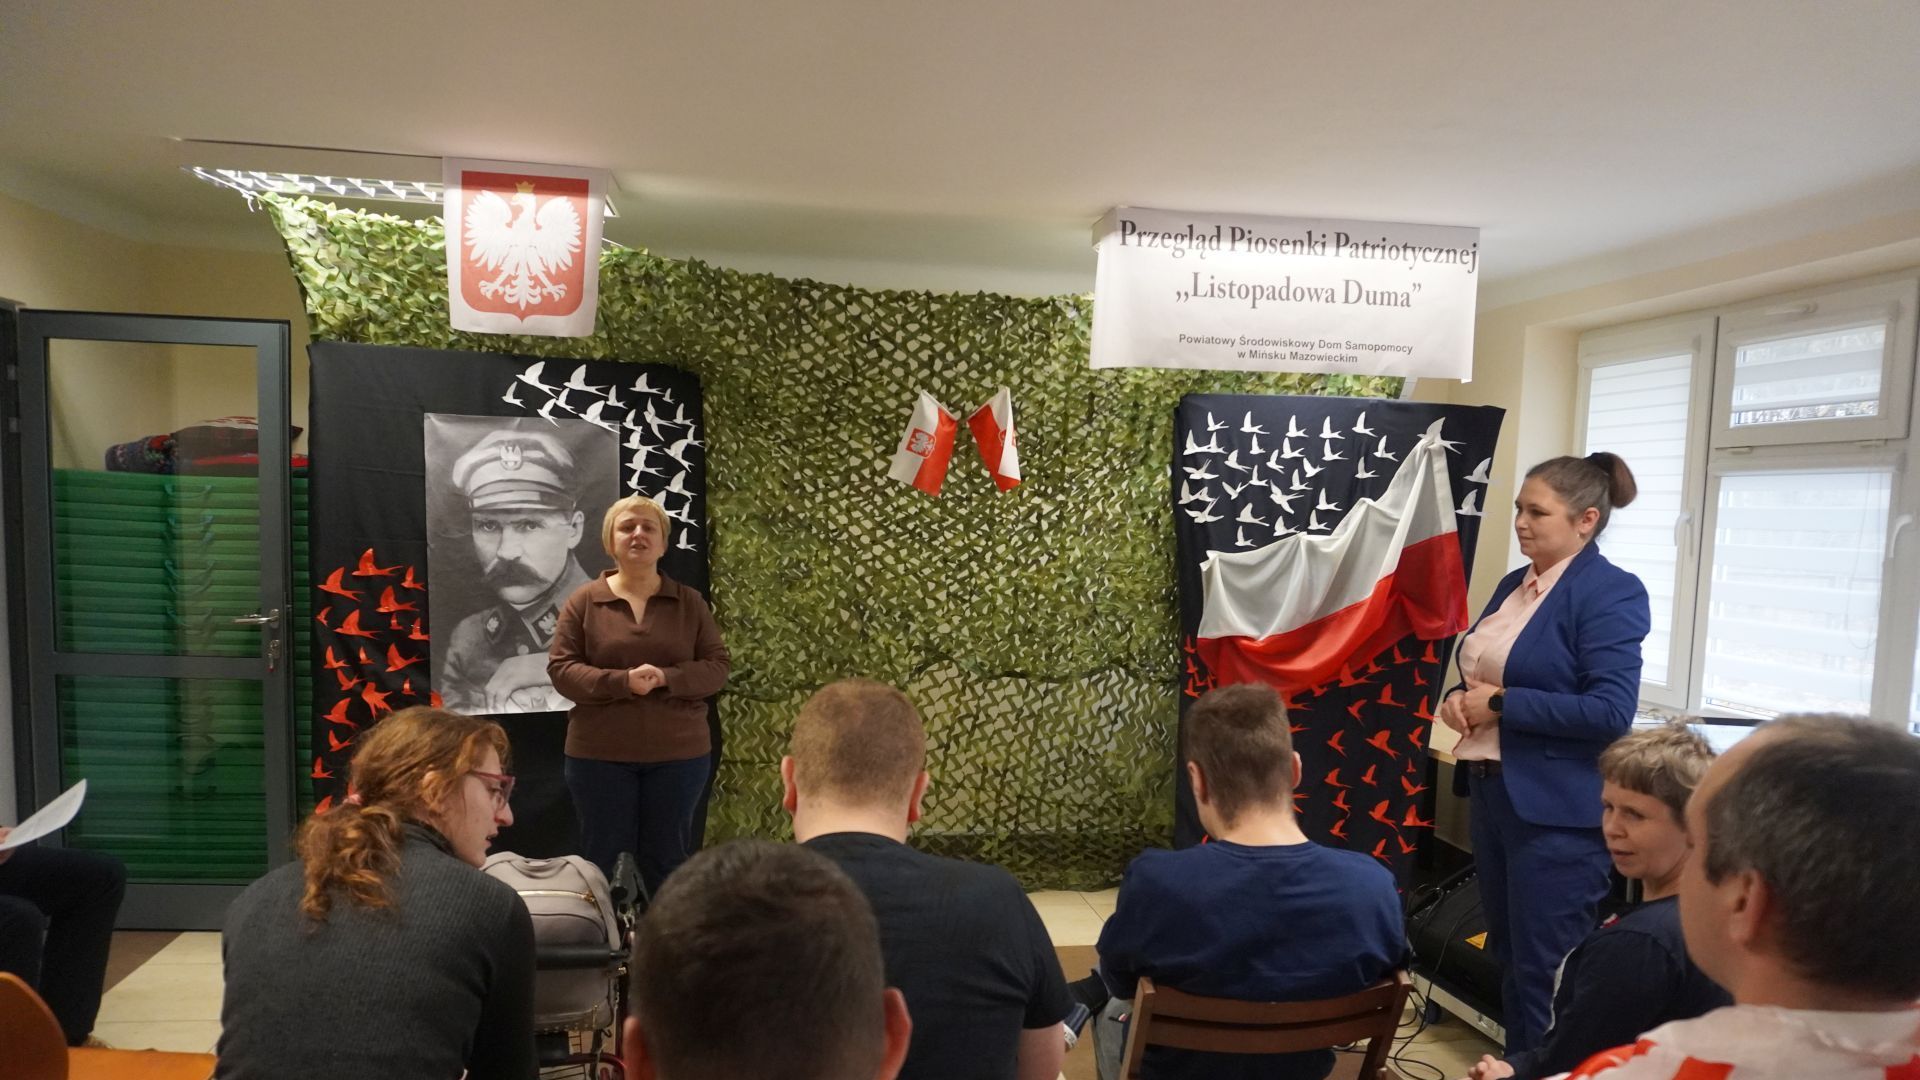 Galeria: Pani Dyrektor Justyna Juszczak wita wszystkich zgromadzonych podczas Przeglądu Piosenki Patriotycznej ''Listopadowa Duma''.